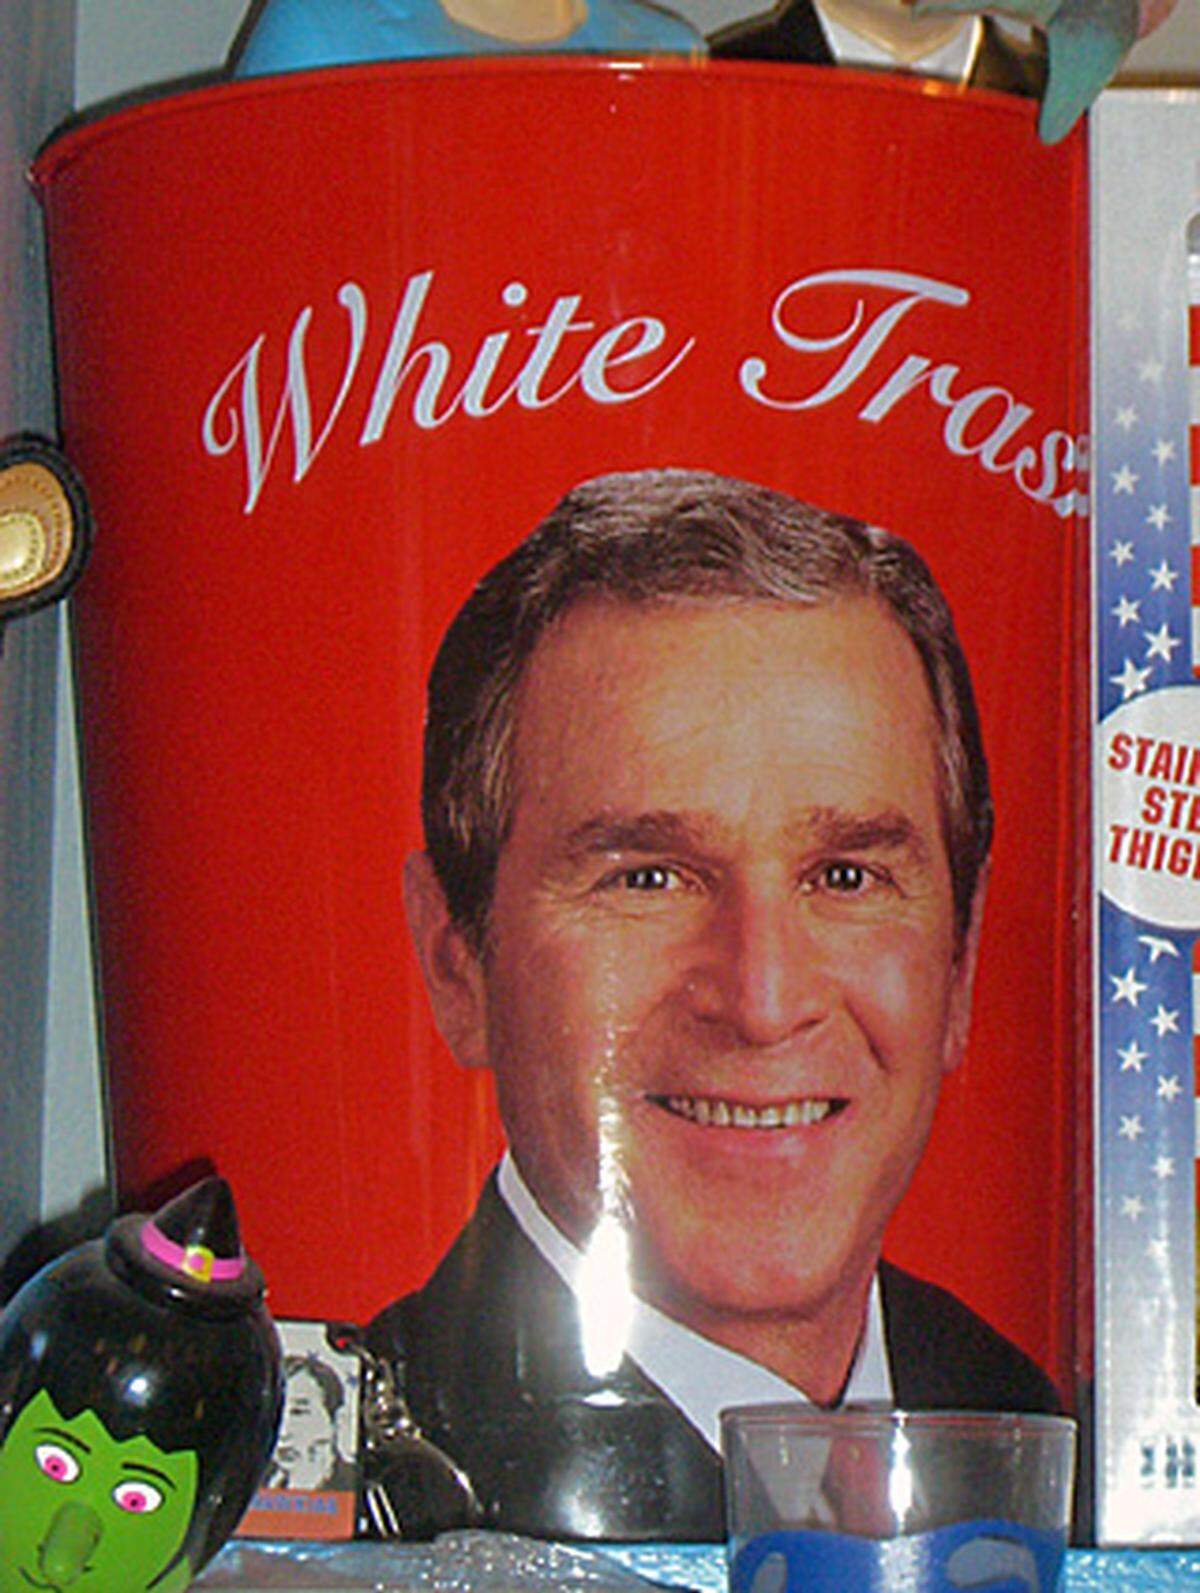 Immerhin wird Bush nicht in den Mülleimer geworfen, sondern prangt oben drauf. Das Portrait an sich mag ja noch charmant sein, der Schriftzug dazu ist es definitiv nicht: "White Trash" bezeichnet nämlich die weiße tiefste Unterschicht der Vereingten Staaten.